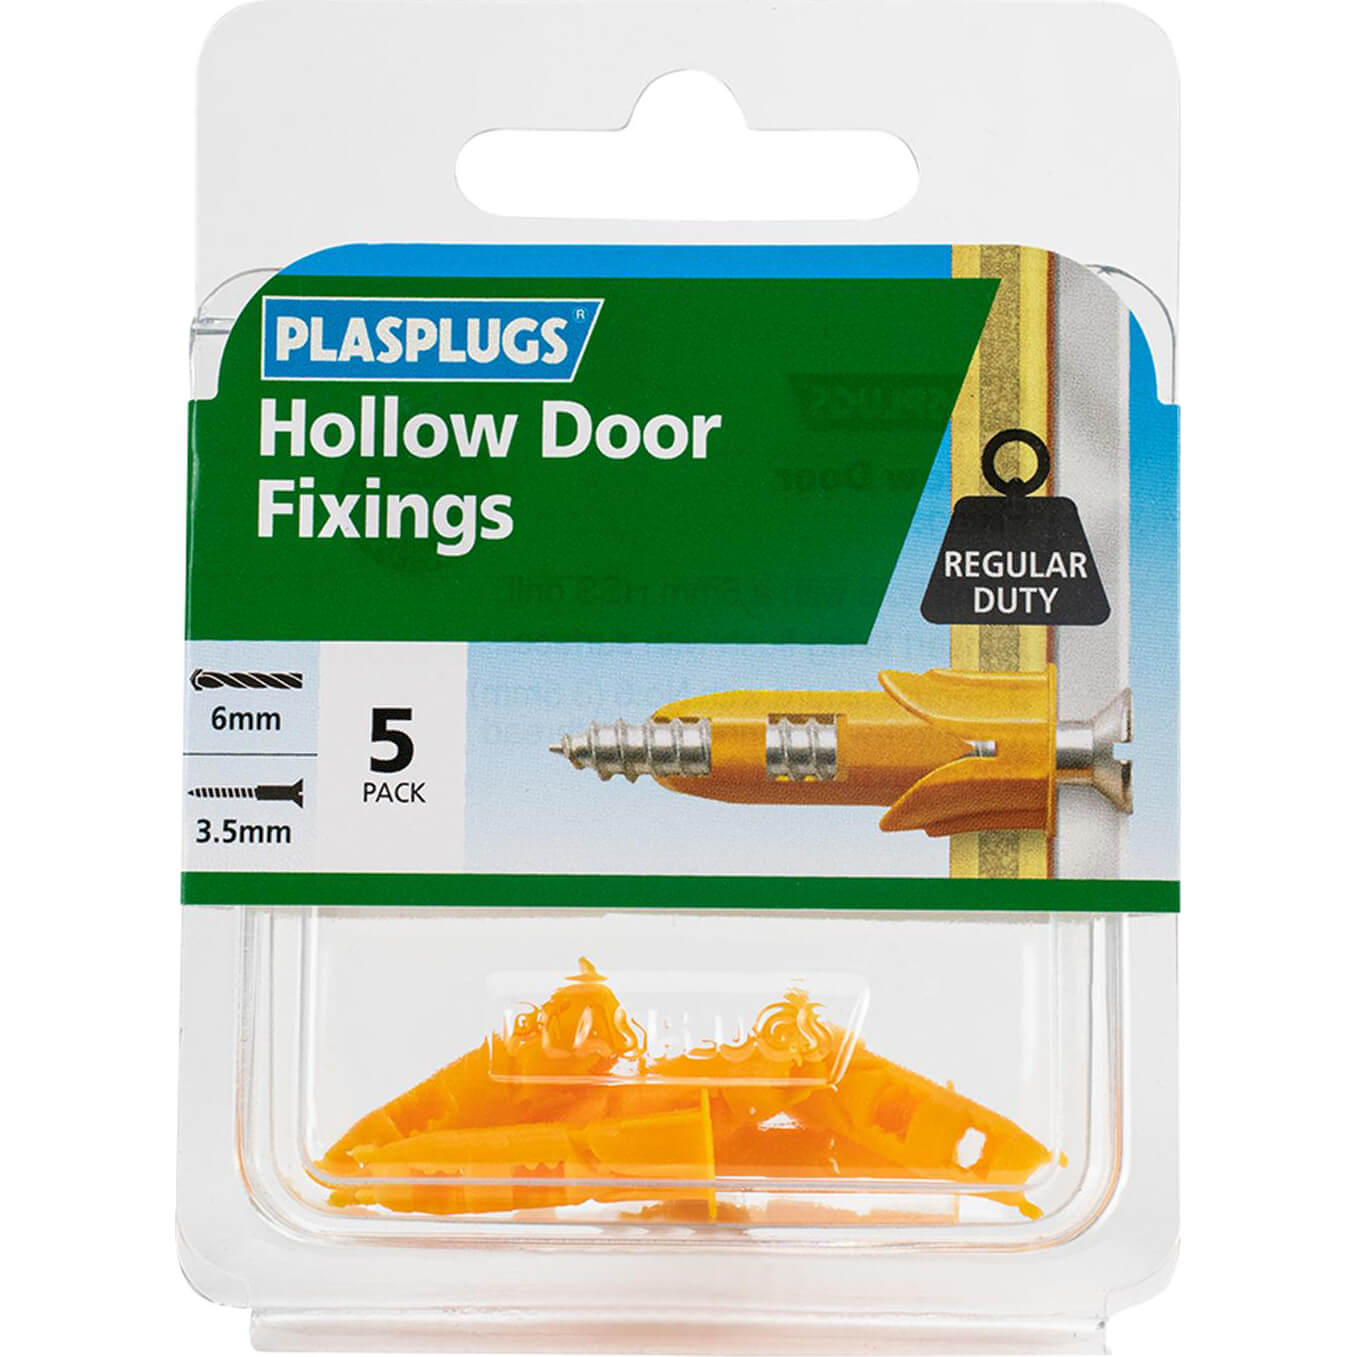 Image of Plasplugs Hollow Door Fixings Pack of 5